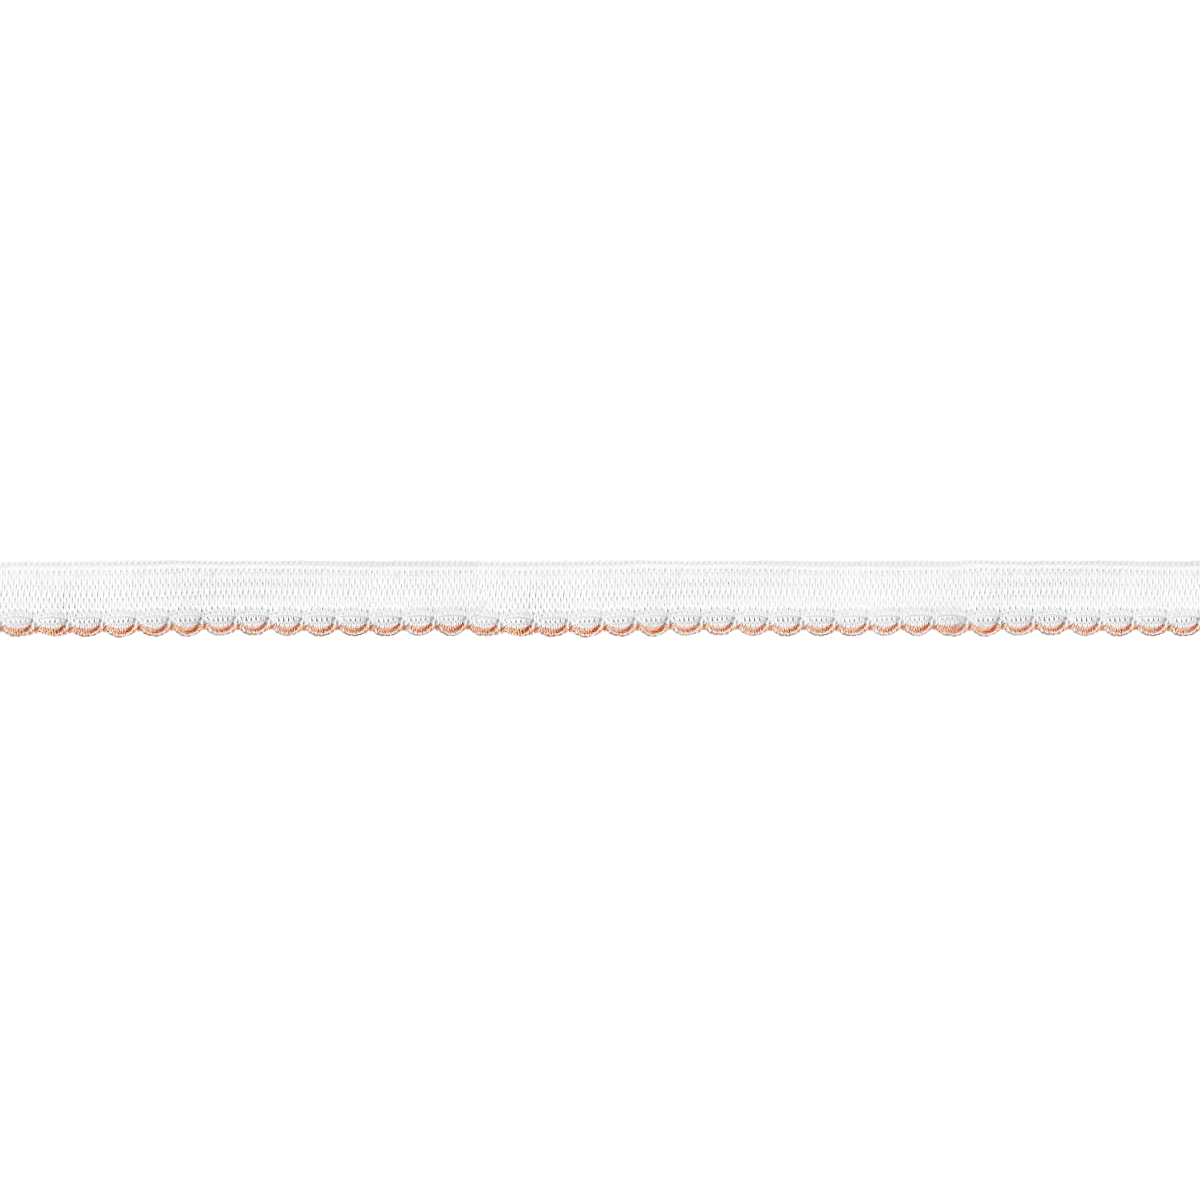 Резинка ажурная для нижнего белья арт. 9112-010 шир. 10 мм бело/св.-оранжевая (уп. 50 м)